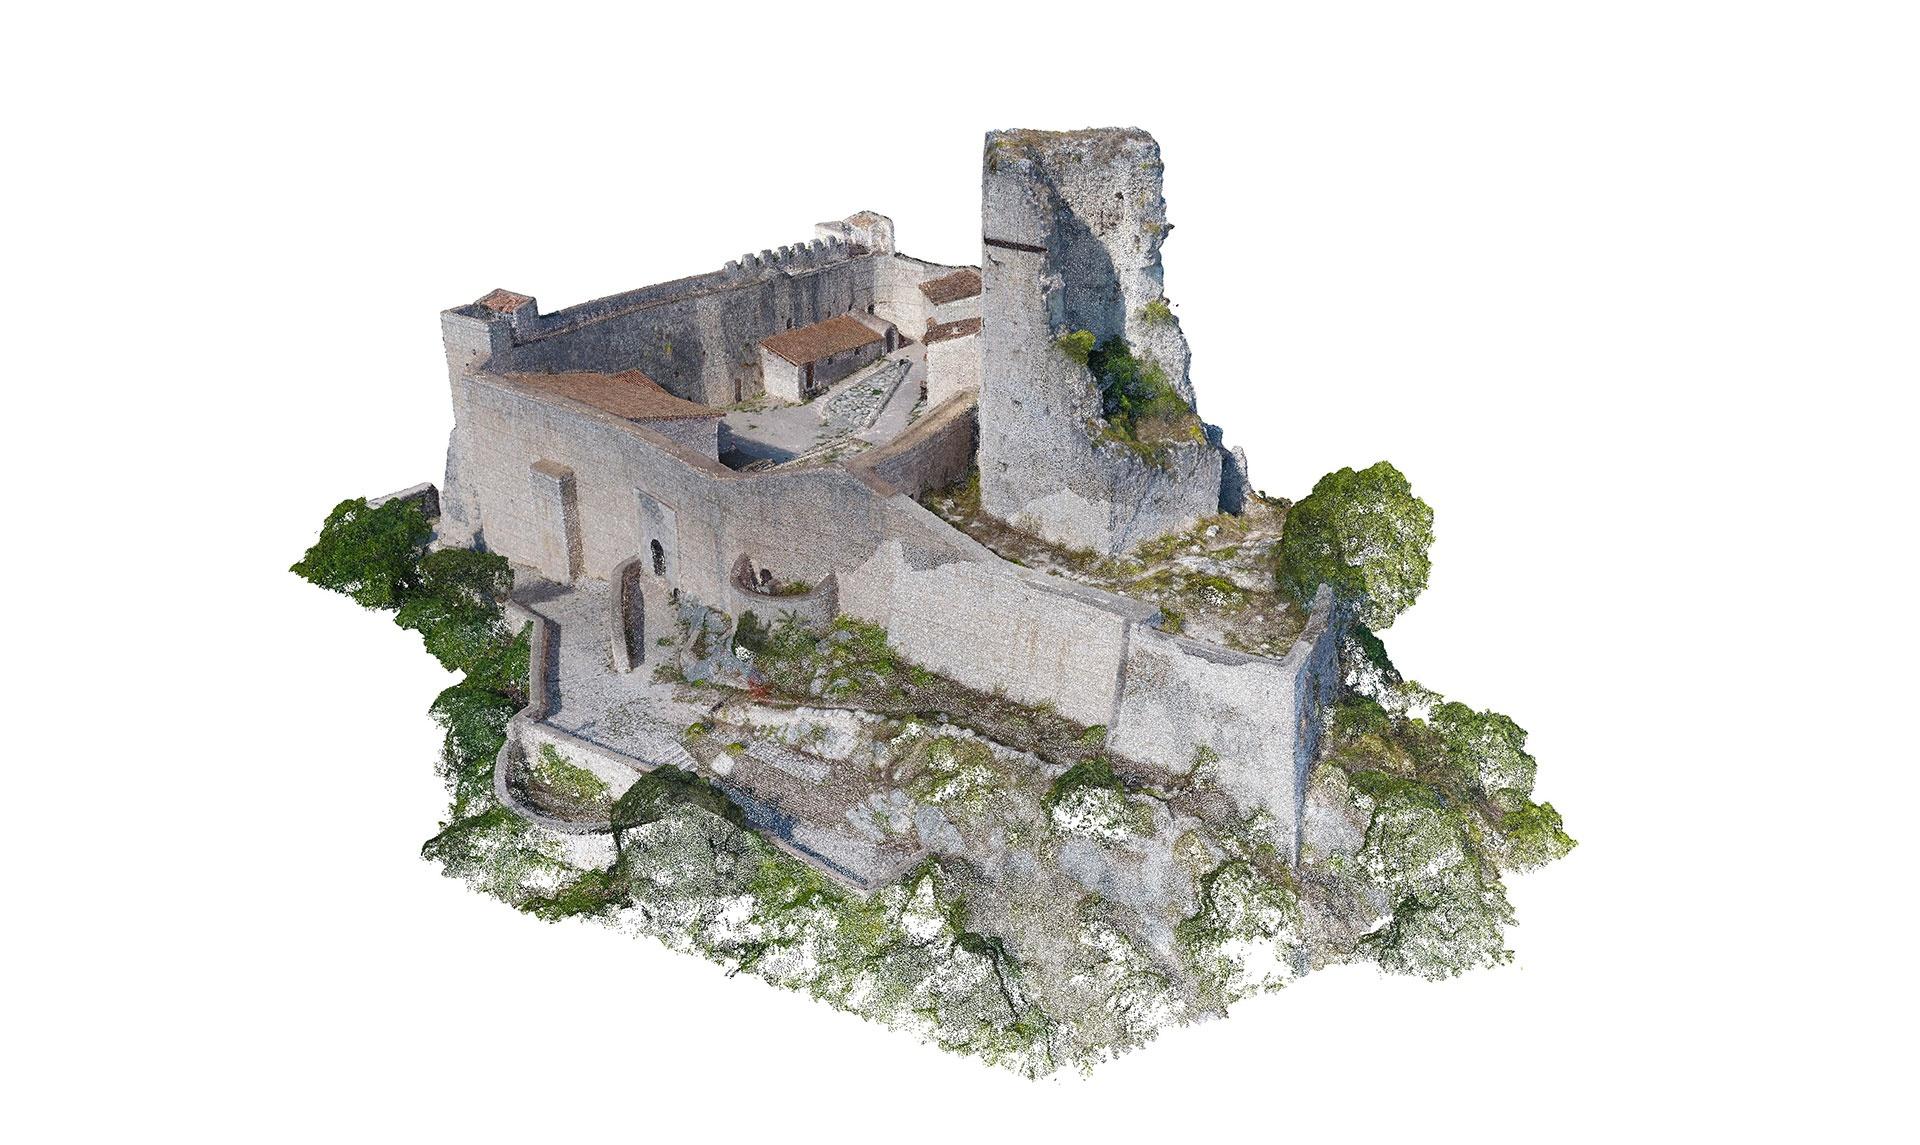 La figura mostra la ricostruzione in 3D come nuvola di punti di Rocca Janula, secondo caso di studio, ottenuta dal rilievo fotogrammetrico digitale da drone.